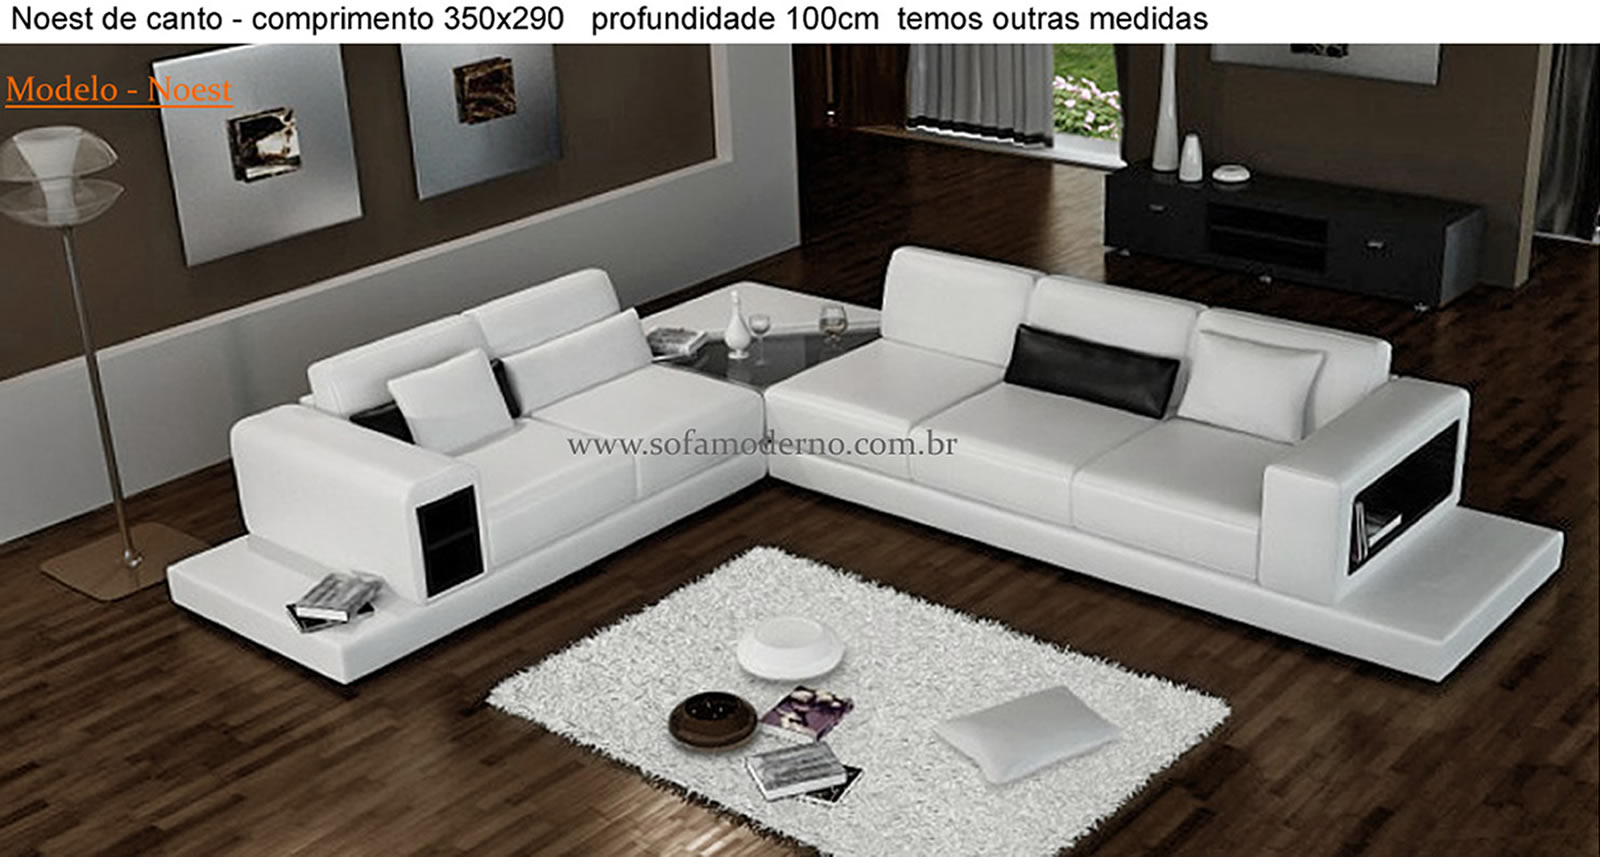 Sofá de Canto - Sofá em L grande - 32 modelos de Casa Claudia |  sofamoderno.com.br